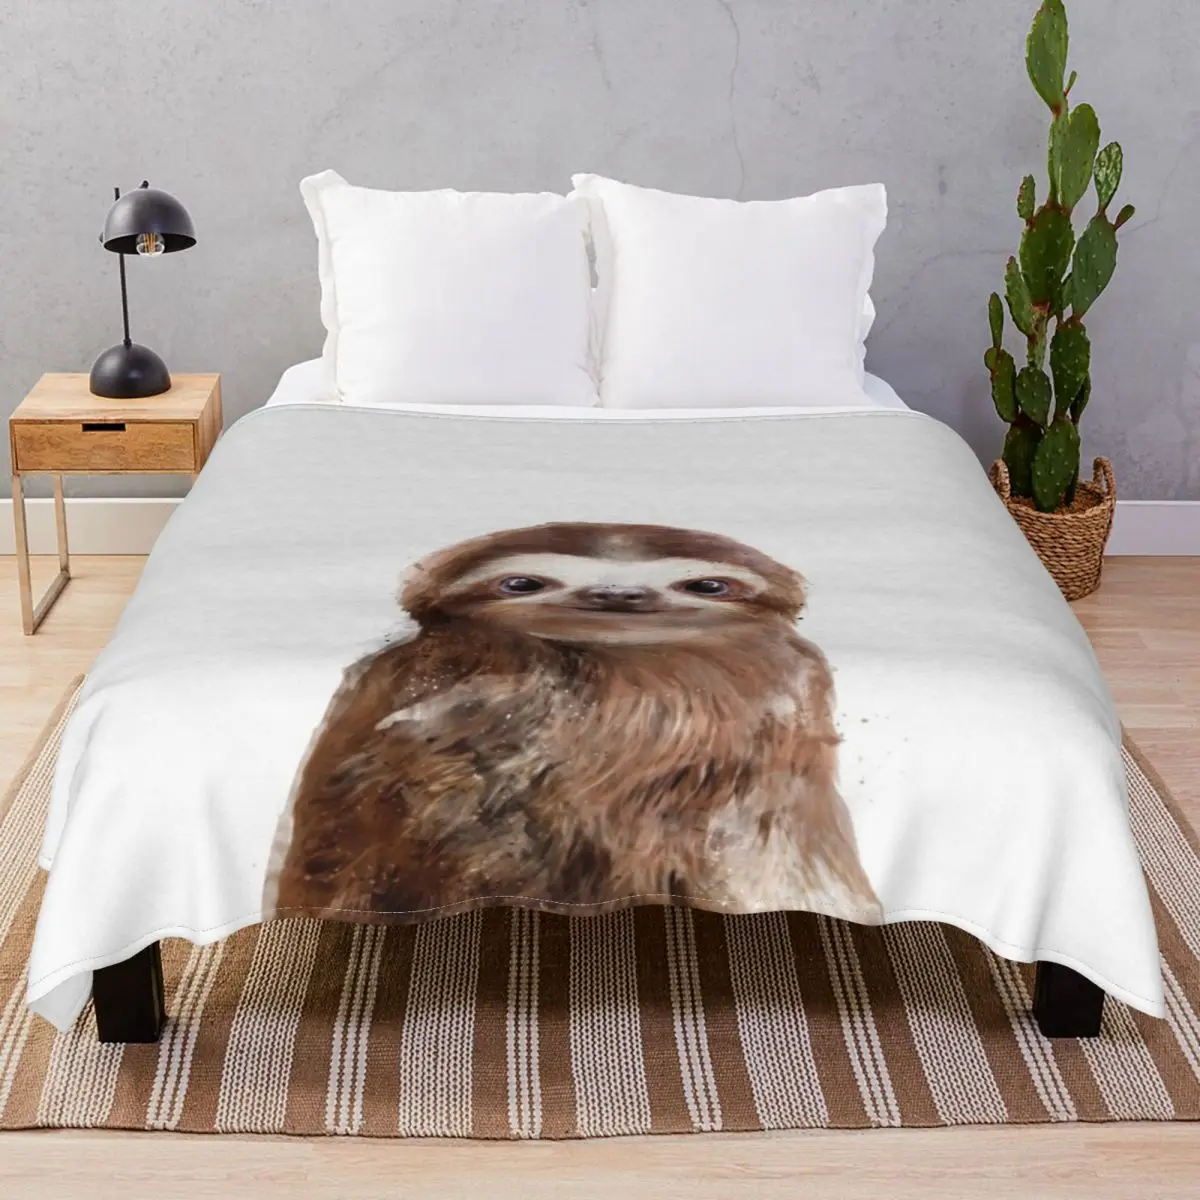 Little Sloth Blanket Velvet Print Portable Throw Blankets for Bedding Home Couch Travel Cinema